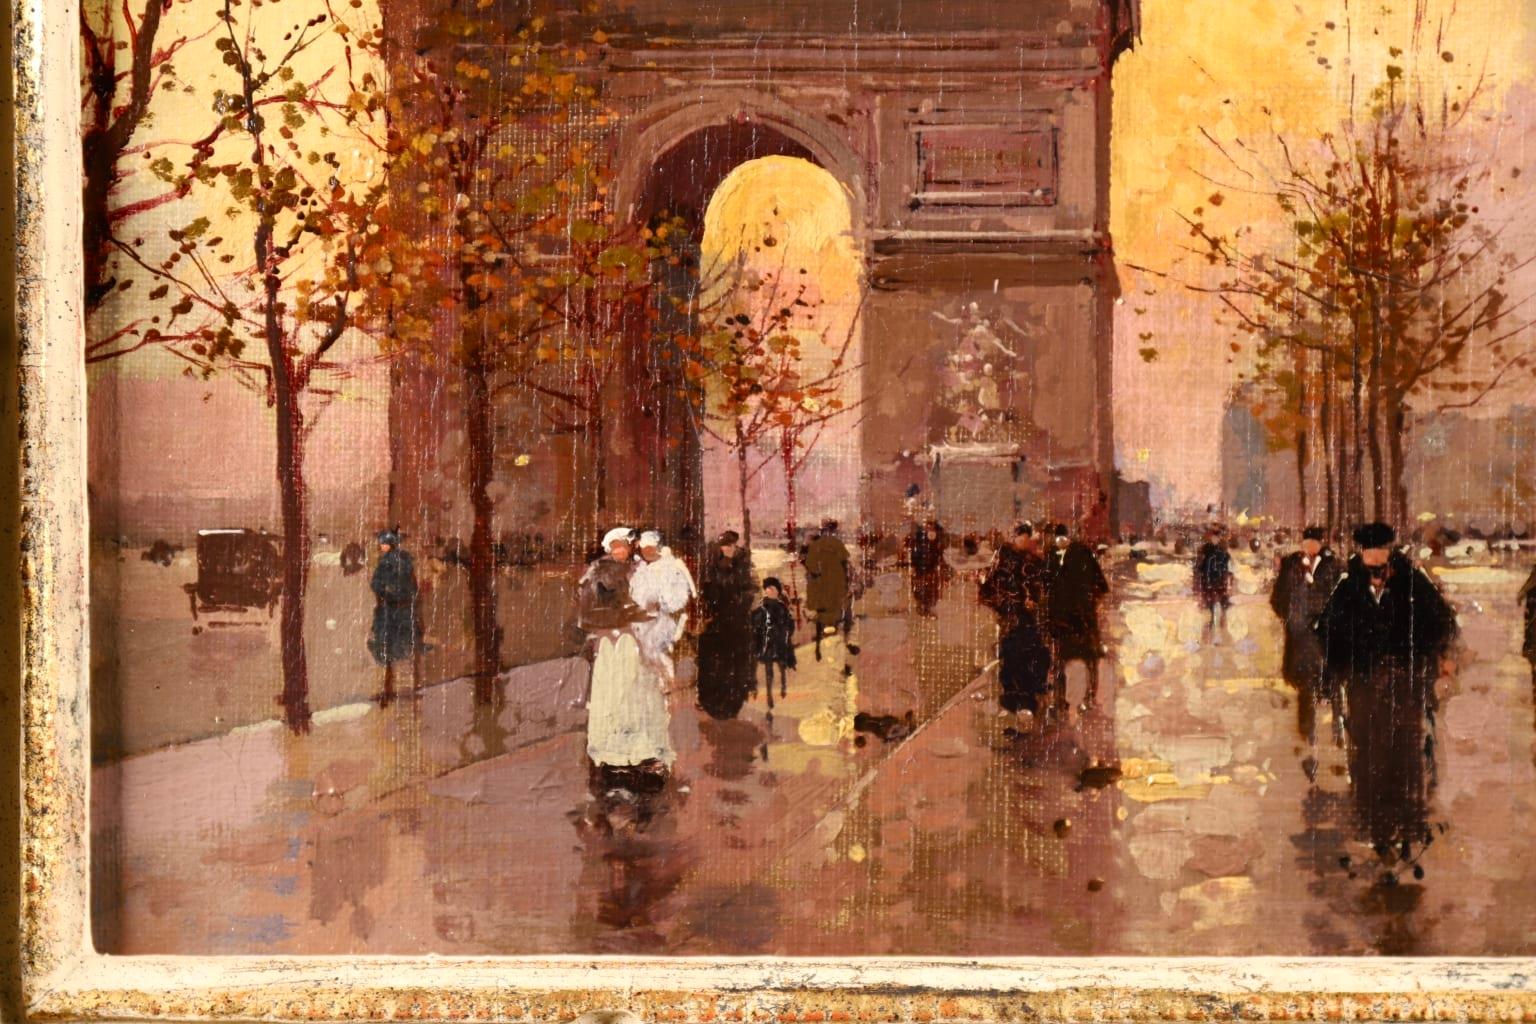 L'Arc de Triomphe - Soir - 20th Century Oil, Figures in Cityscape by E L Cortès - Impressionist Painting by Édouard Leon Cortès